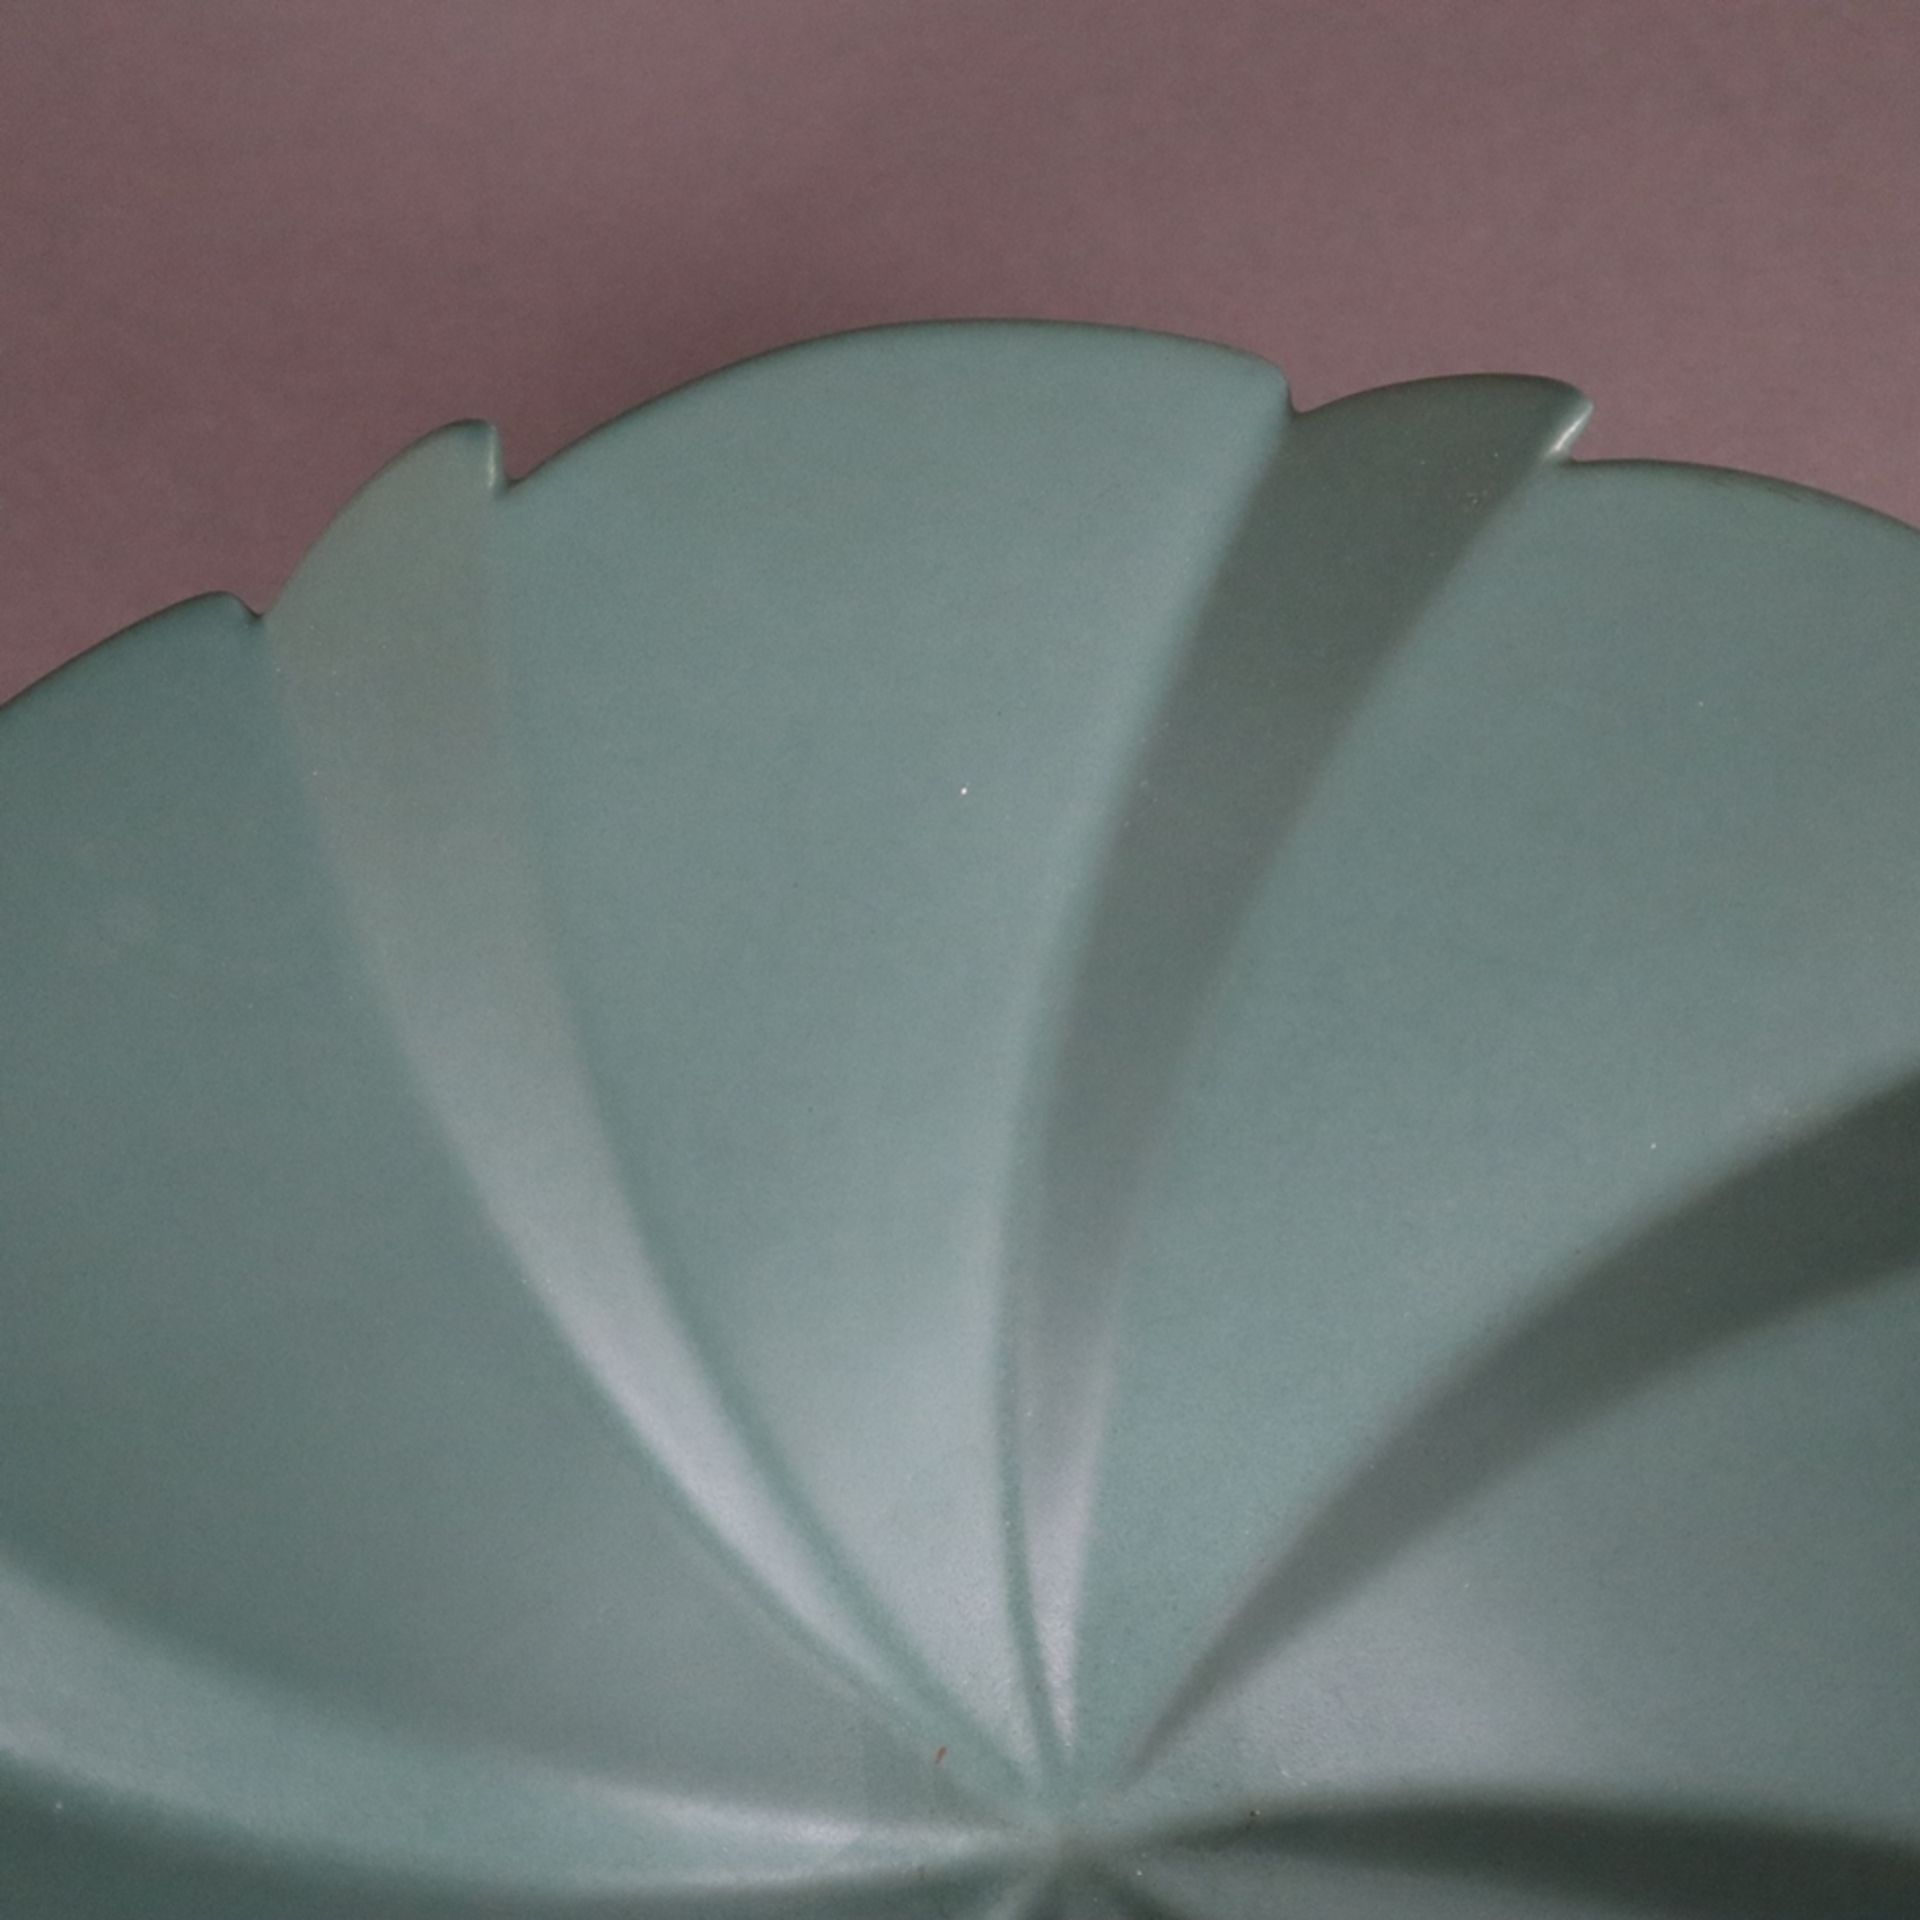 Keramikschale- Søholm, Dänemark, tannengrün glasiert, geschweifte Form auf rundem Standfuß, unterse - Bild 4 aus 6